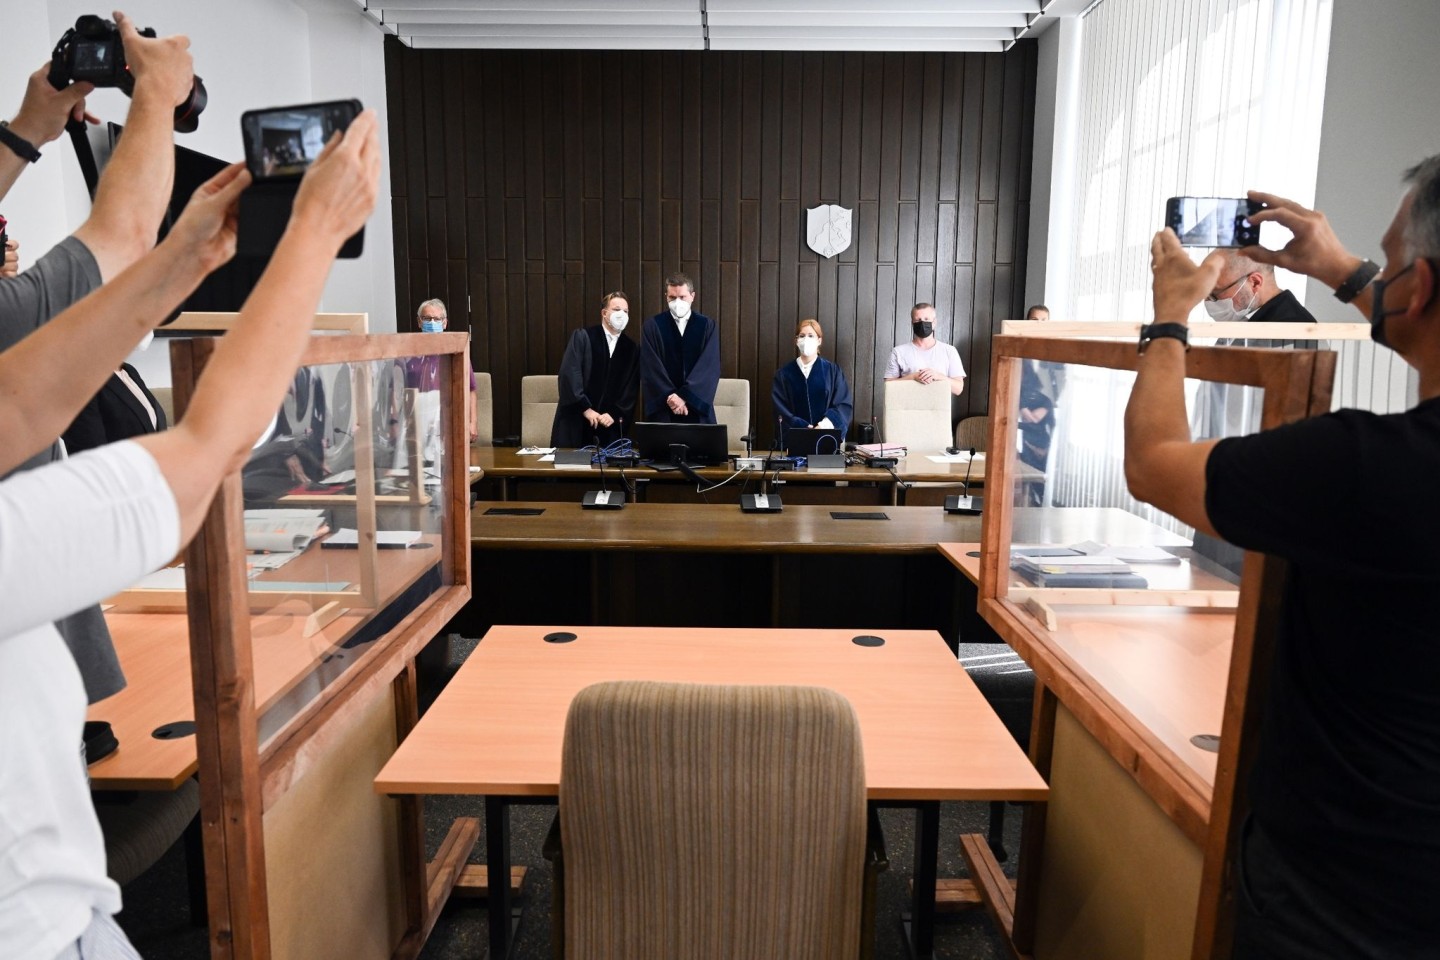 Medienvertreter machen Aufnahmen im Prozesssaal des Verwaltungsgerichts Gelsenkirchen: In einem Verfahren wendet sich ein Apotheker aus Bottrop gegen den Widerruf seiner Approbation.